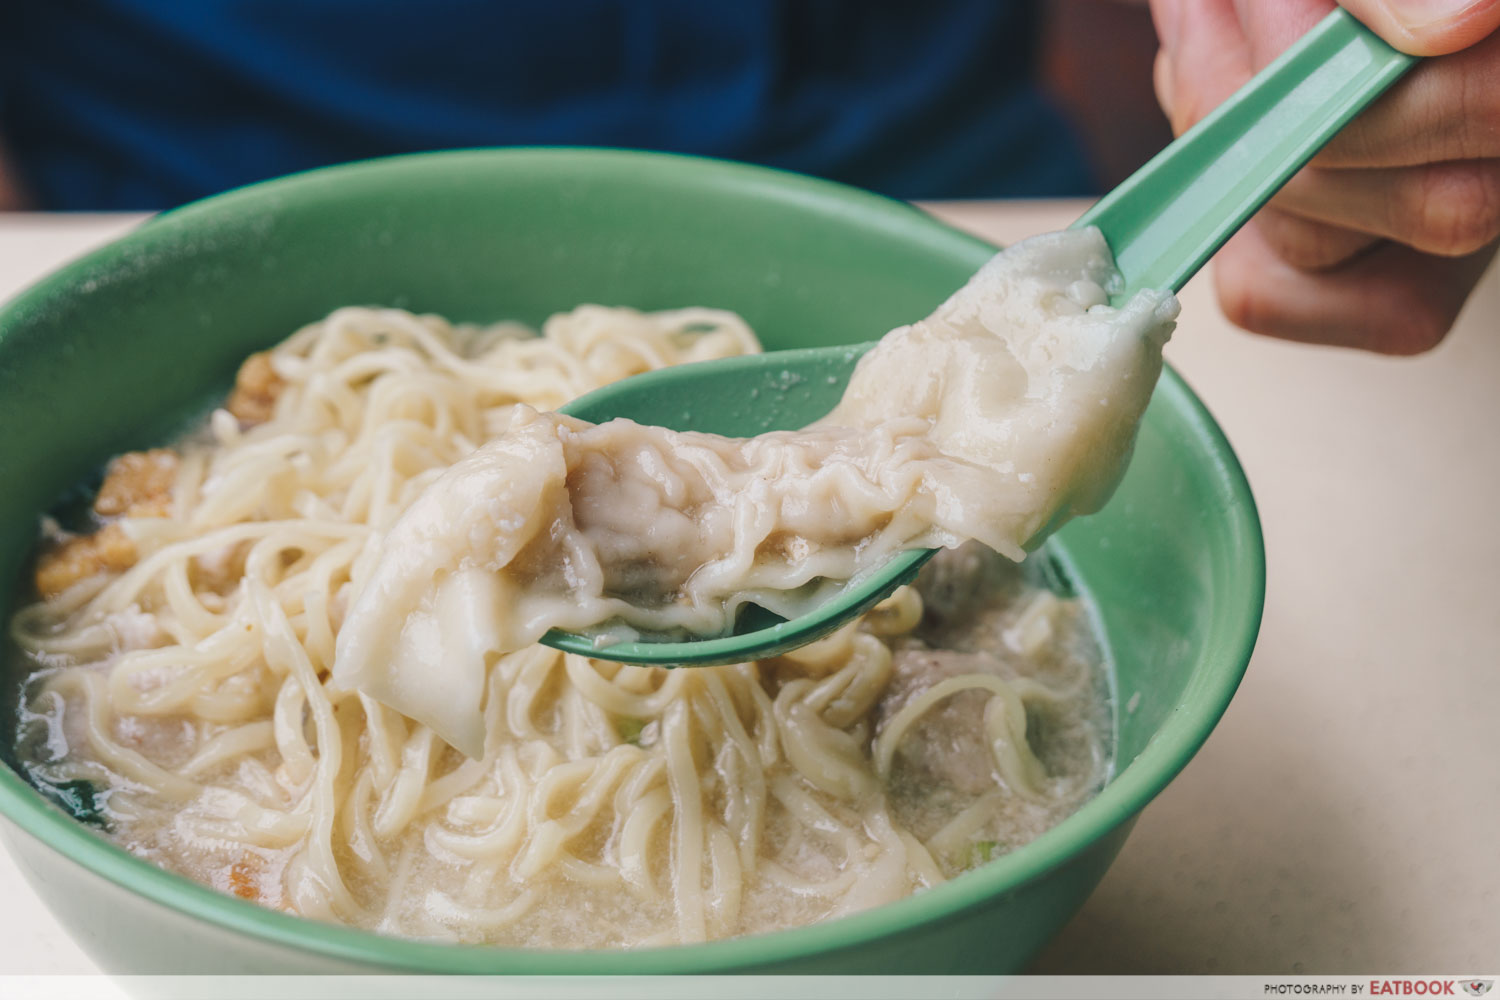 Soon Heng Pork Noodles - Boiled dumpling